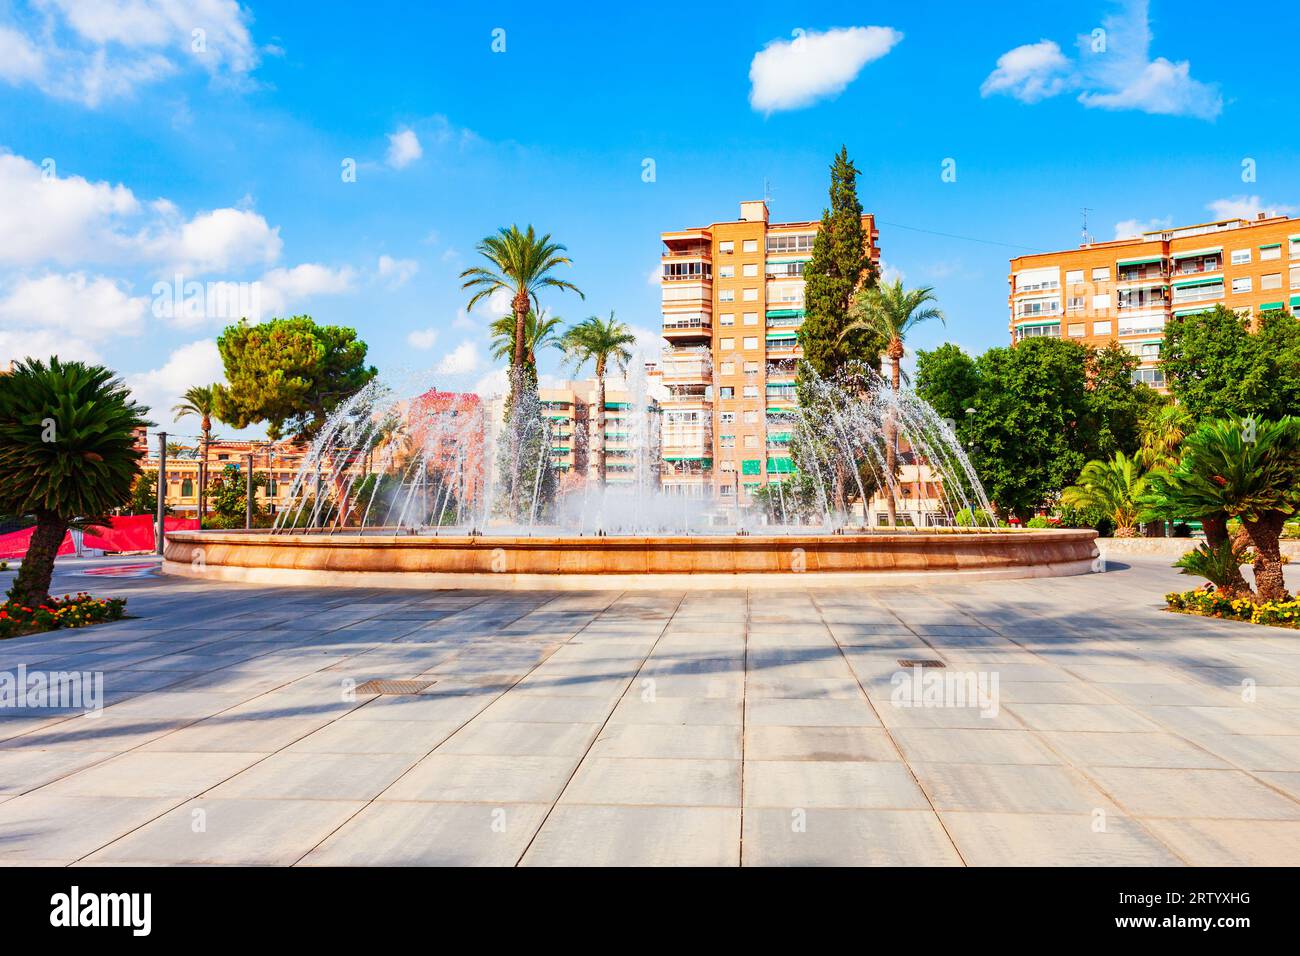 Place circulaire ou Plaza circulaire à Murcia. Murcia est une ville dans le sud-est de l'Espagne. Banque D'Images